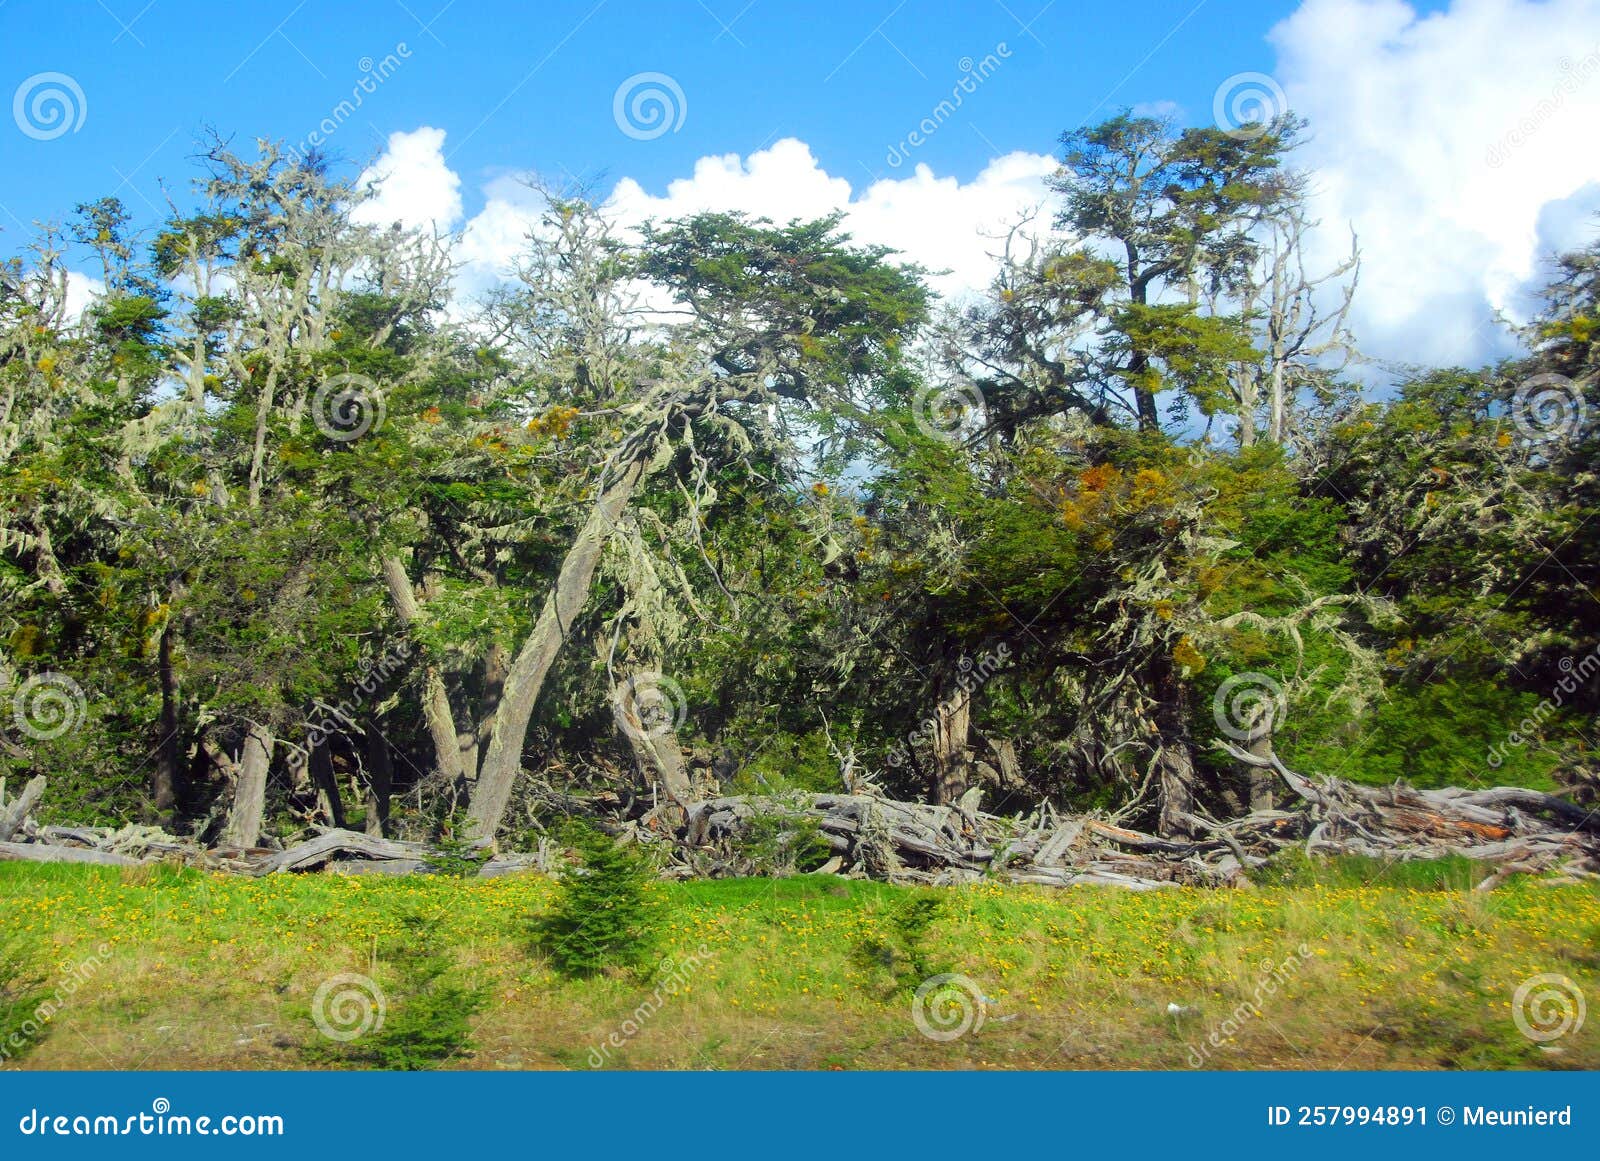 the bosque andino patagÃÂ³nico is a type of temperate to cold forest located in southern chile